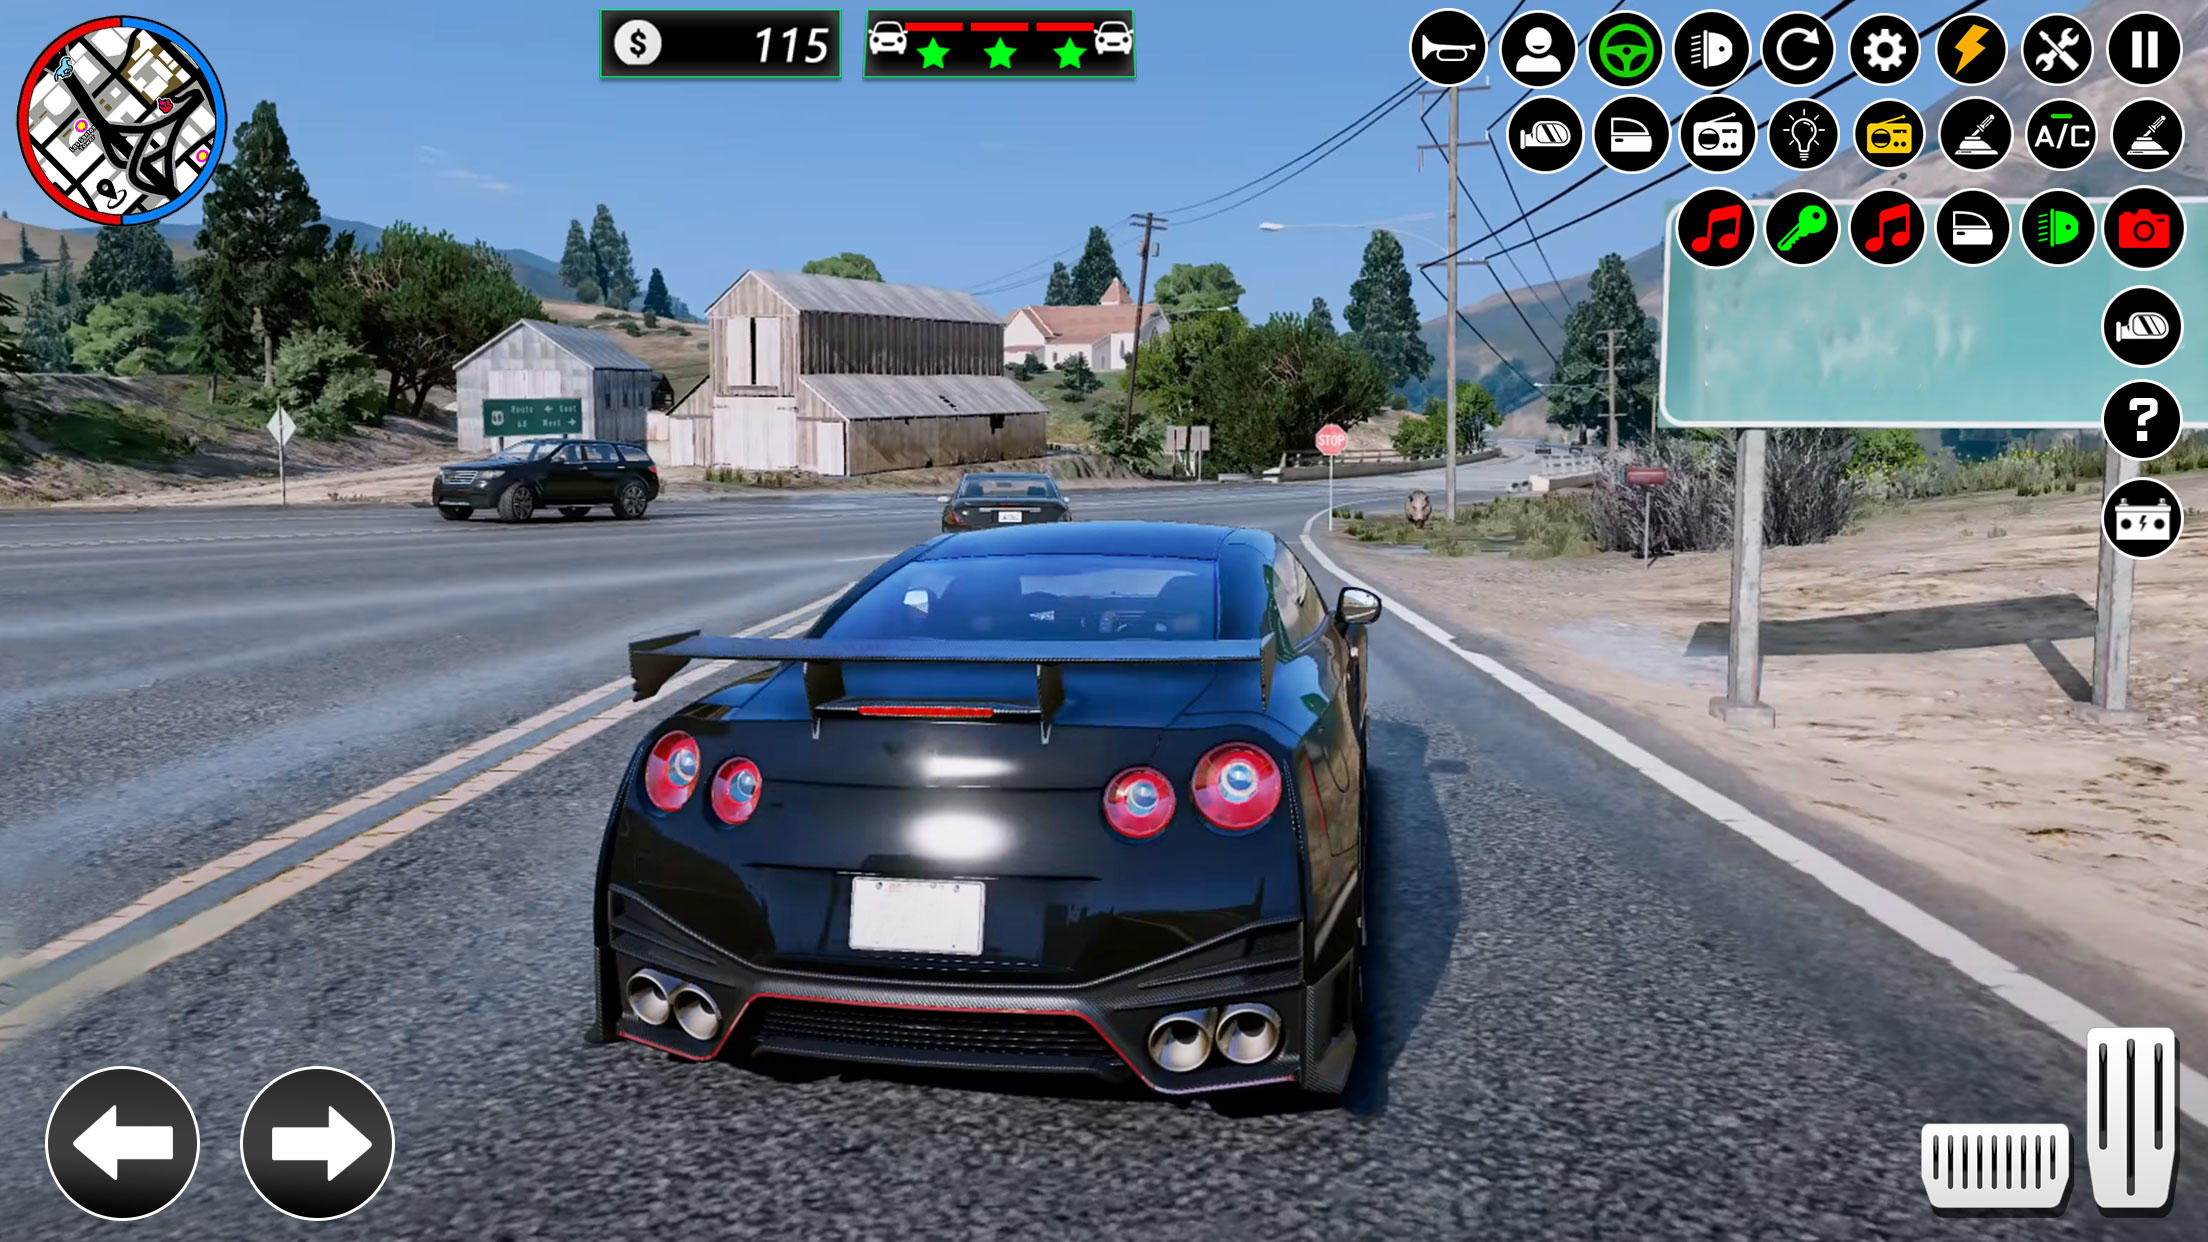 Screenshot 1 of Permainan Gangster Vegas Crime City 2.1.4